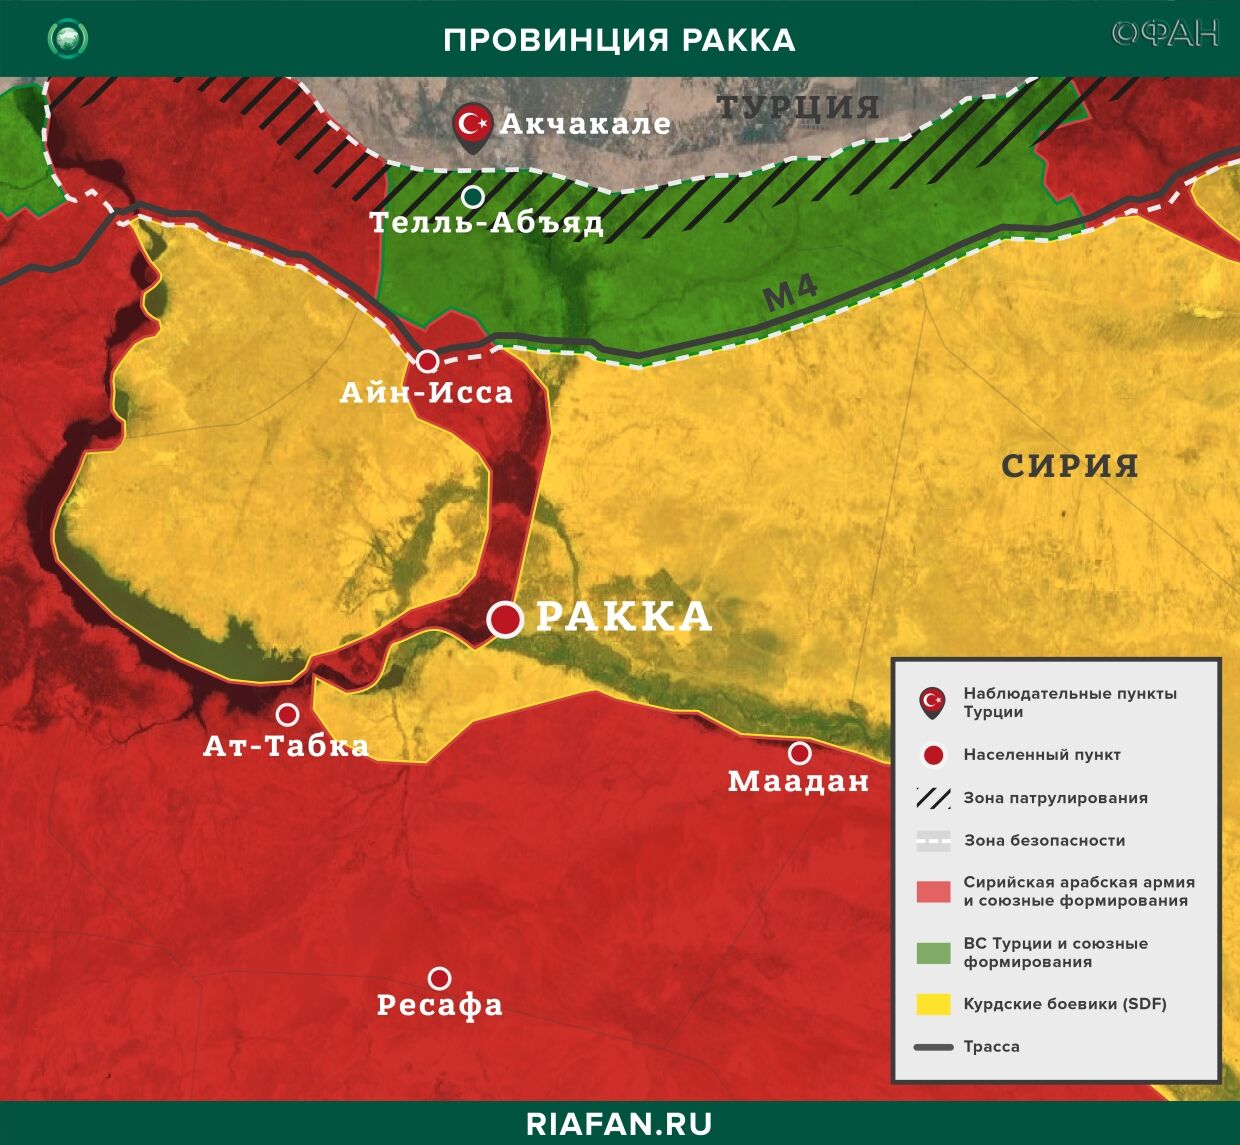 叙利亚每日结果 1 可能 06.00: союзников Турции подозревают в поддержке террористов ИГ*, SDF изолировали квартал в Хасаке